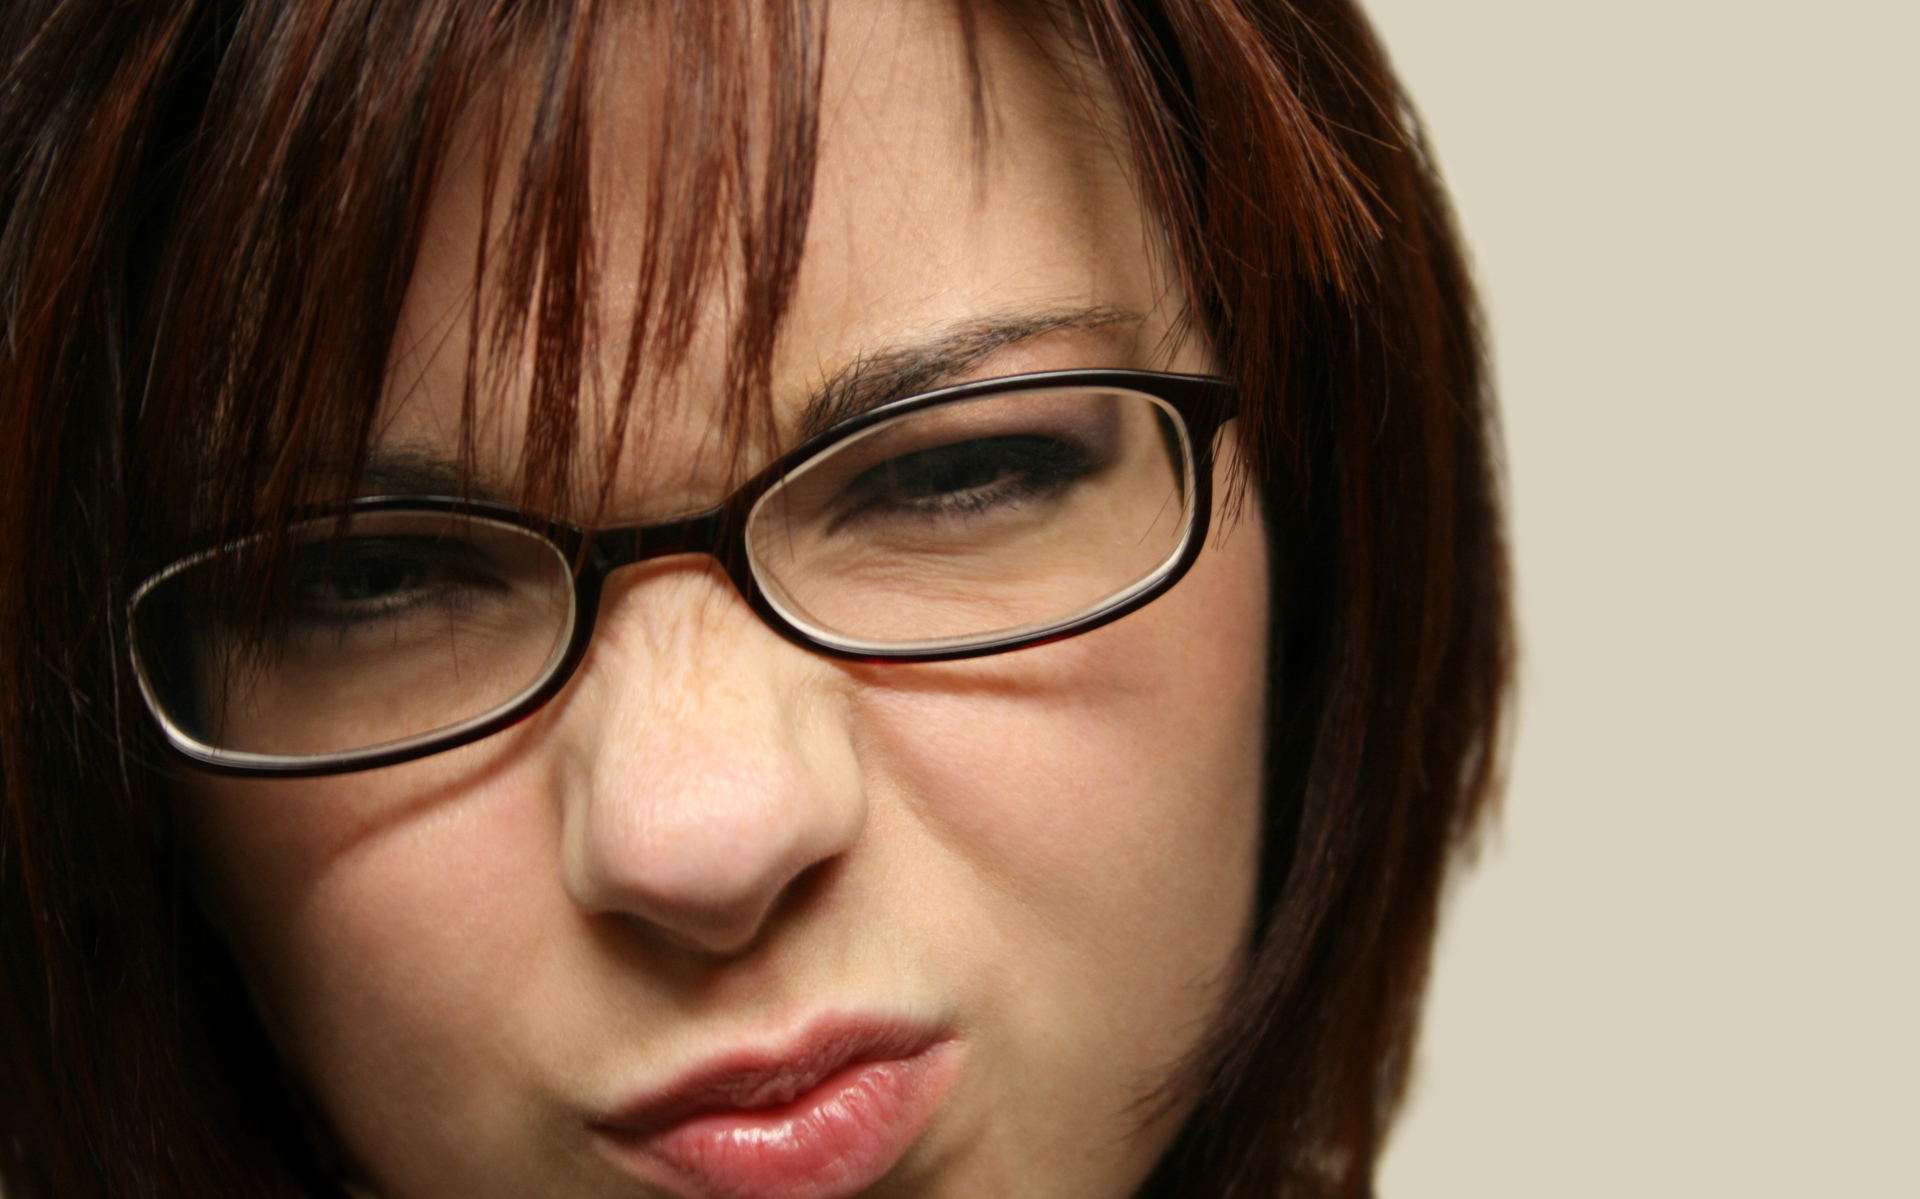 women, glasses, faces, girls with glasses - desktop wallpaper